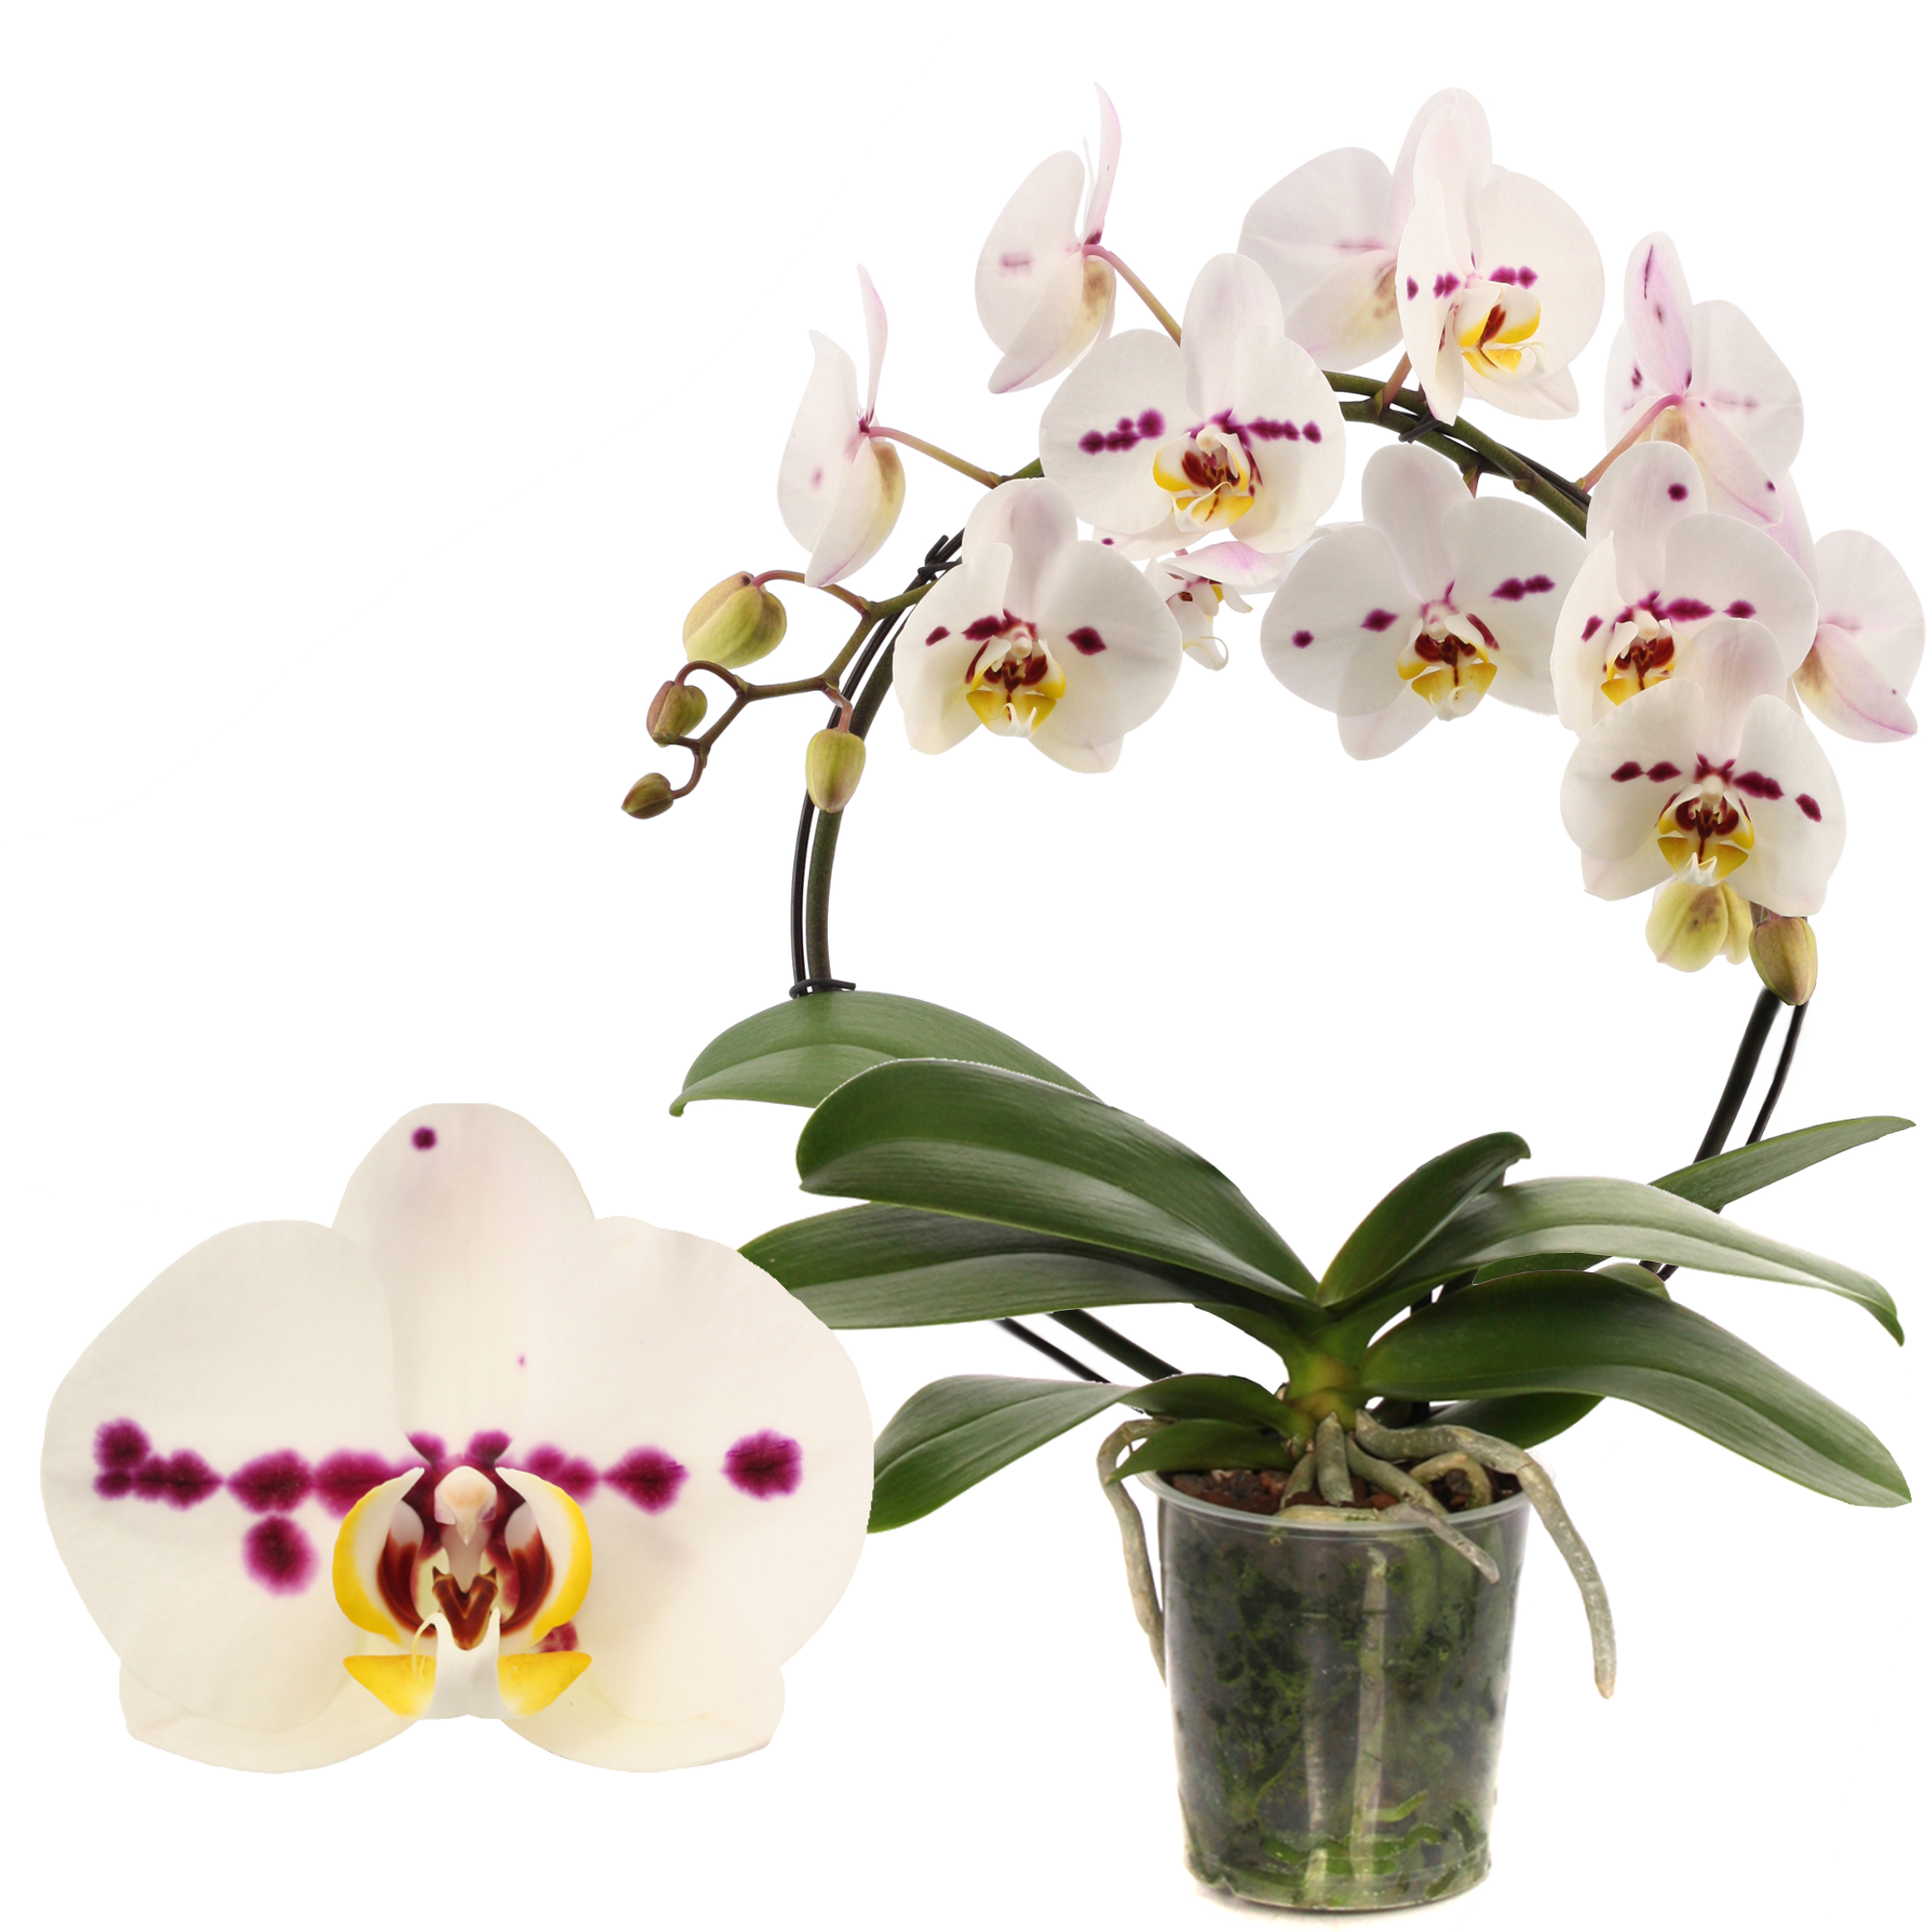 Schmetterlingsorchidee 'Boog Spottion' 1 Rispe am Bogen, weiß, 12 cm Topf + product picture